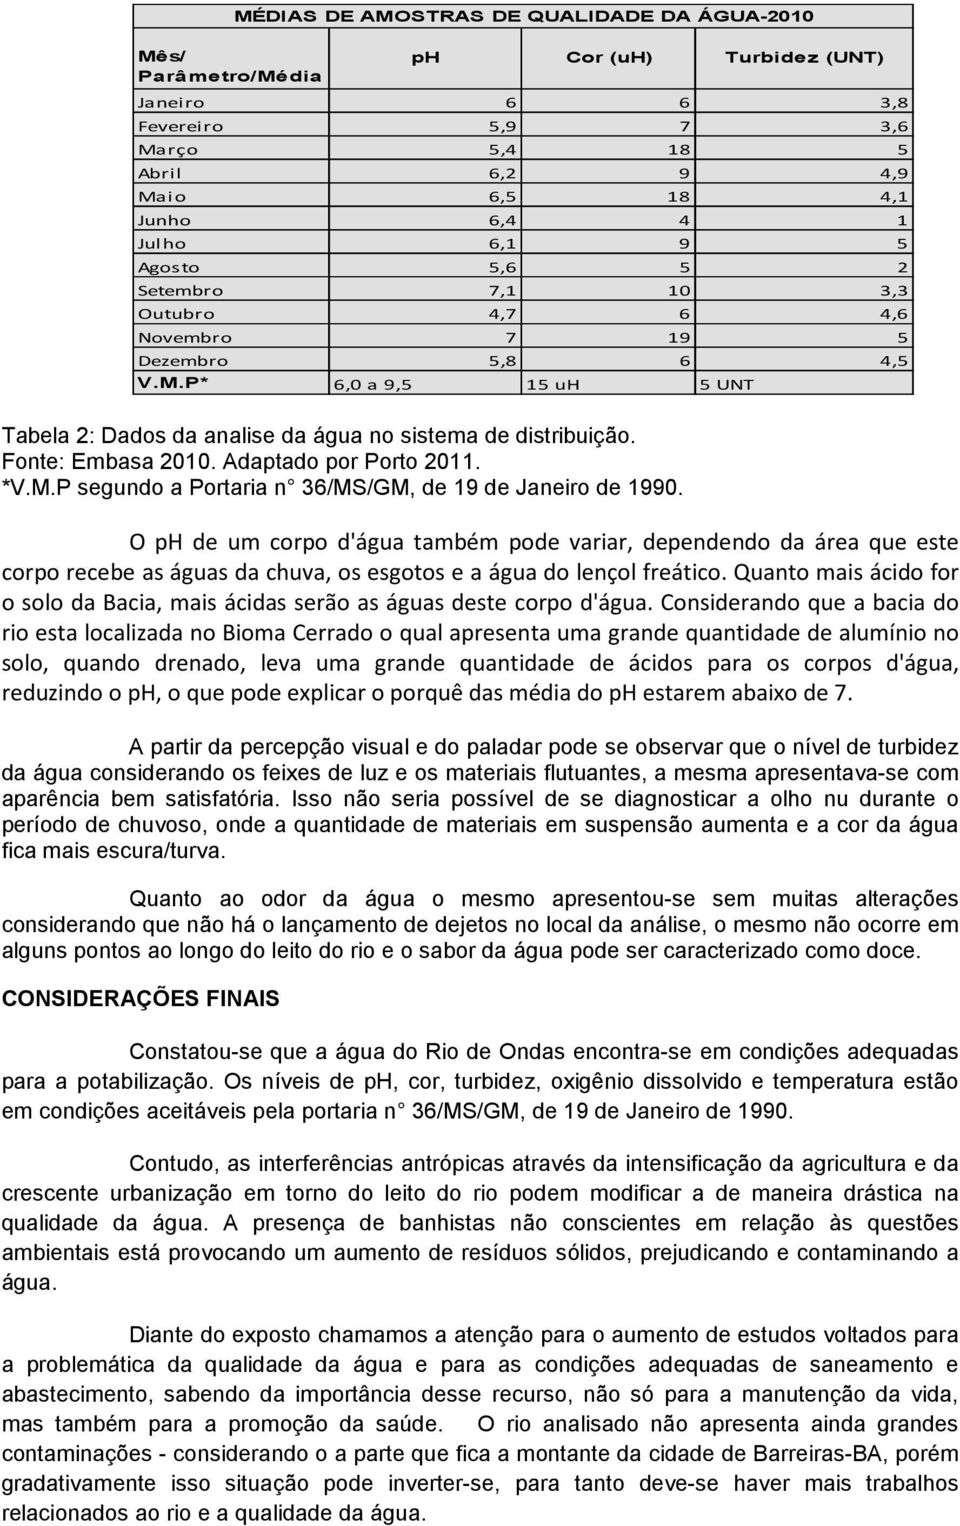 Fonte: Embasa 2010. Adaptado por Porto 2011. *V.M.P segundo a Portaria n 36/MS/GM, de 19 de Janeiro de 1990.